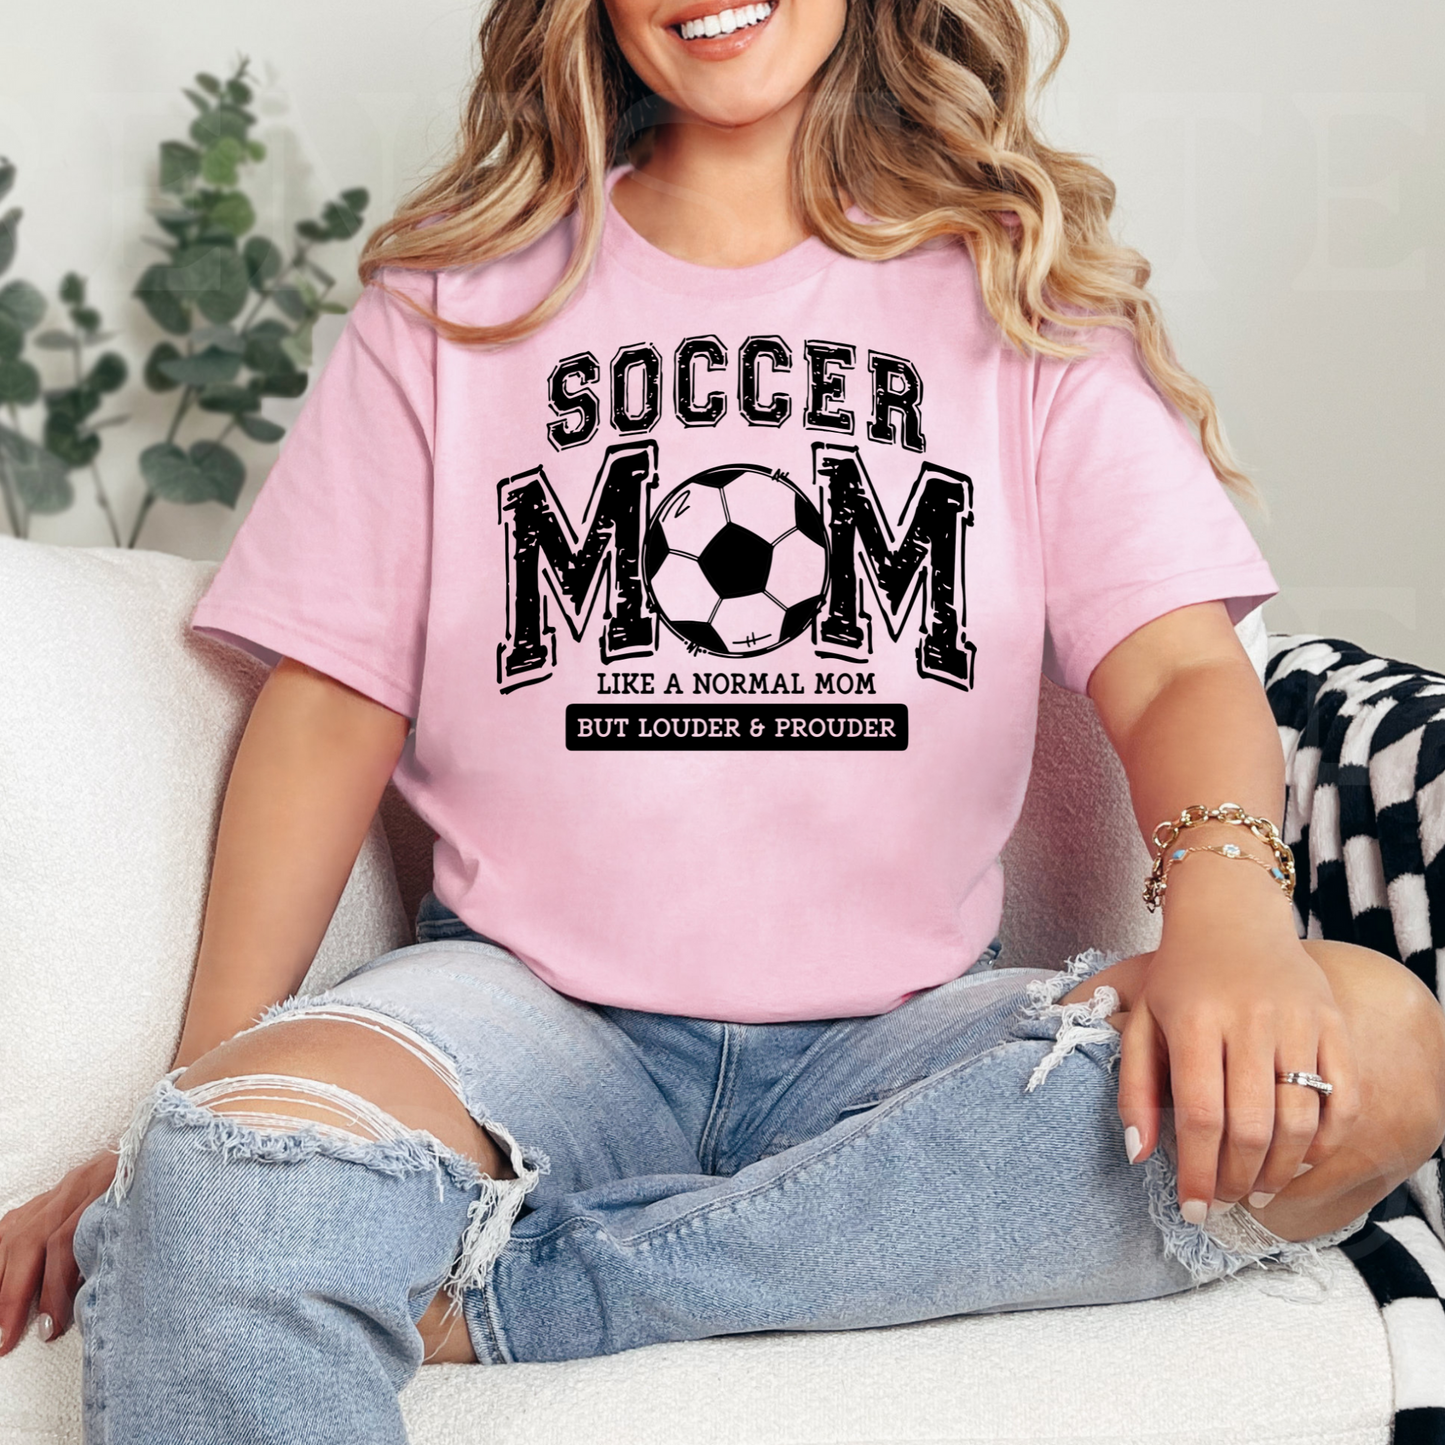 Stolze Fußballmama T-Shirt - Geschenk für engagierte Mütter